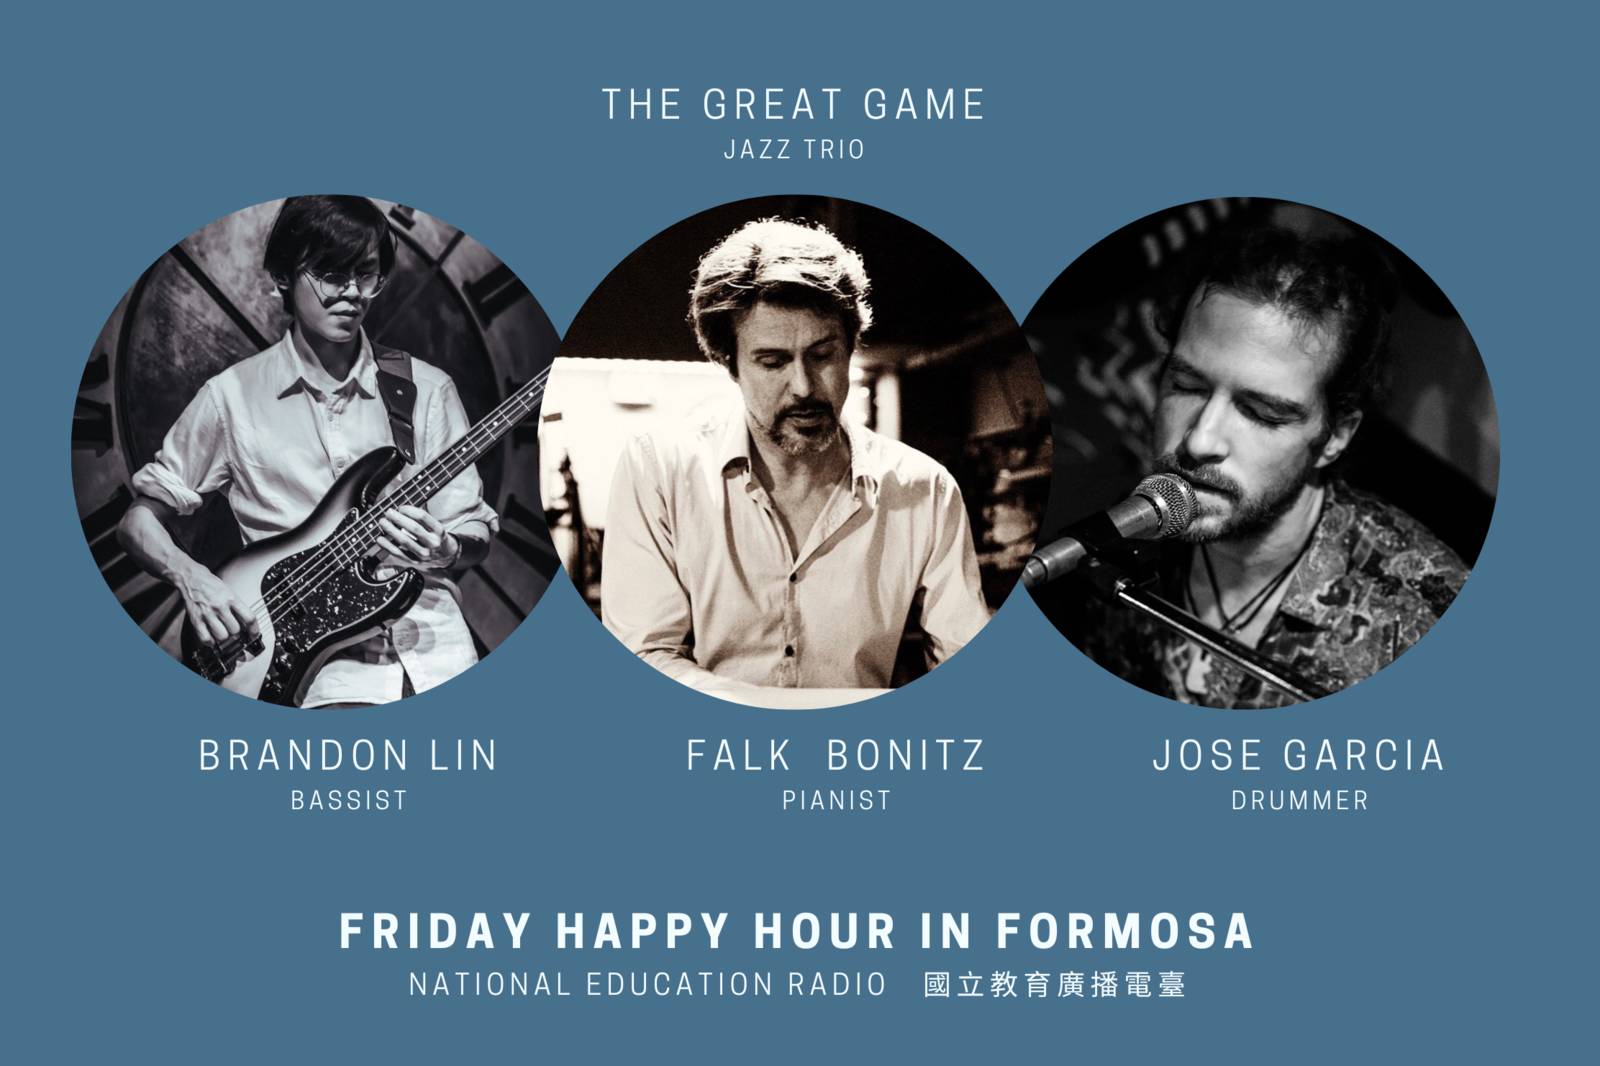 狂響爵士組合 - The Great Game Jazz Trio *Jazz Trio The Great Game (Falk Bonitz/Jose Garcia/Brandon Lin) 